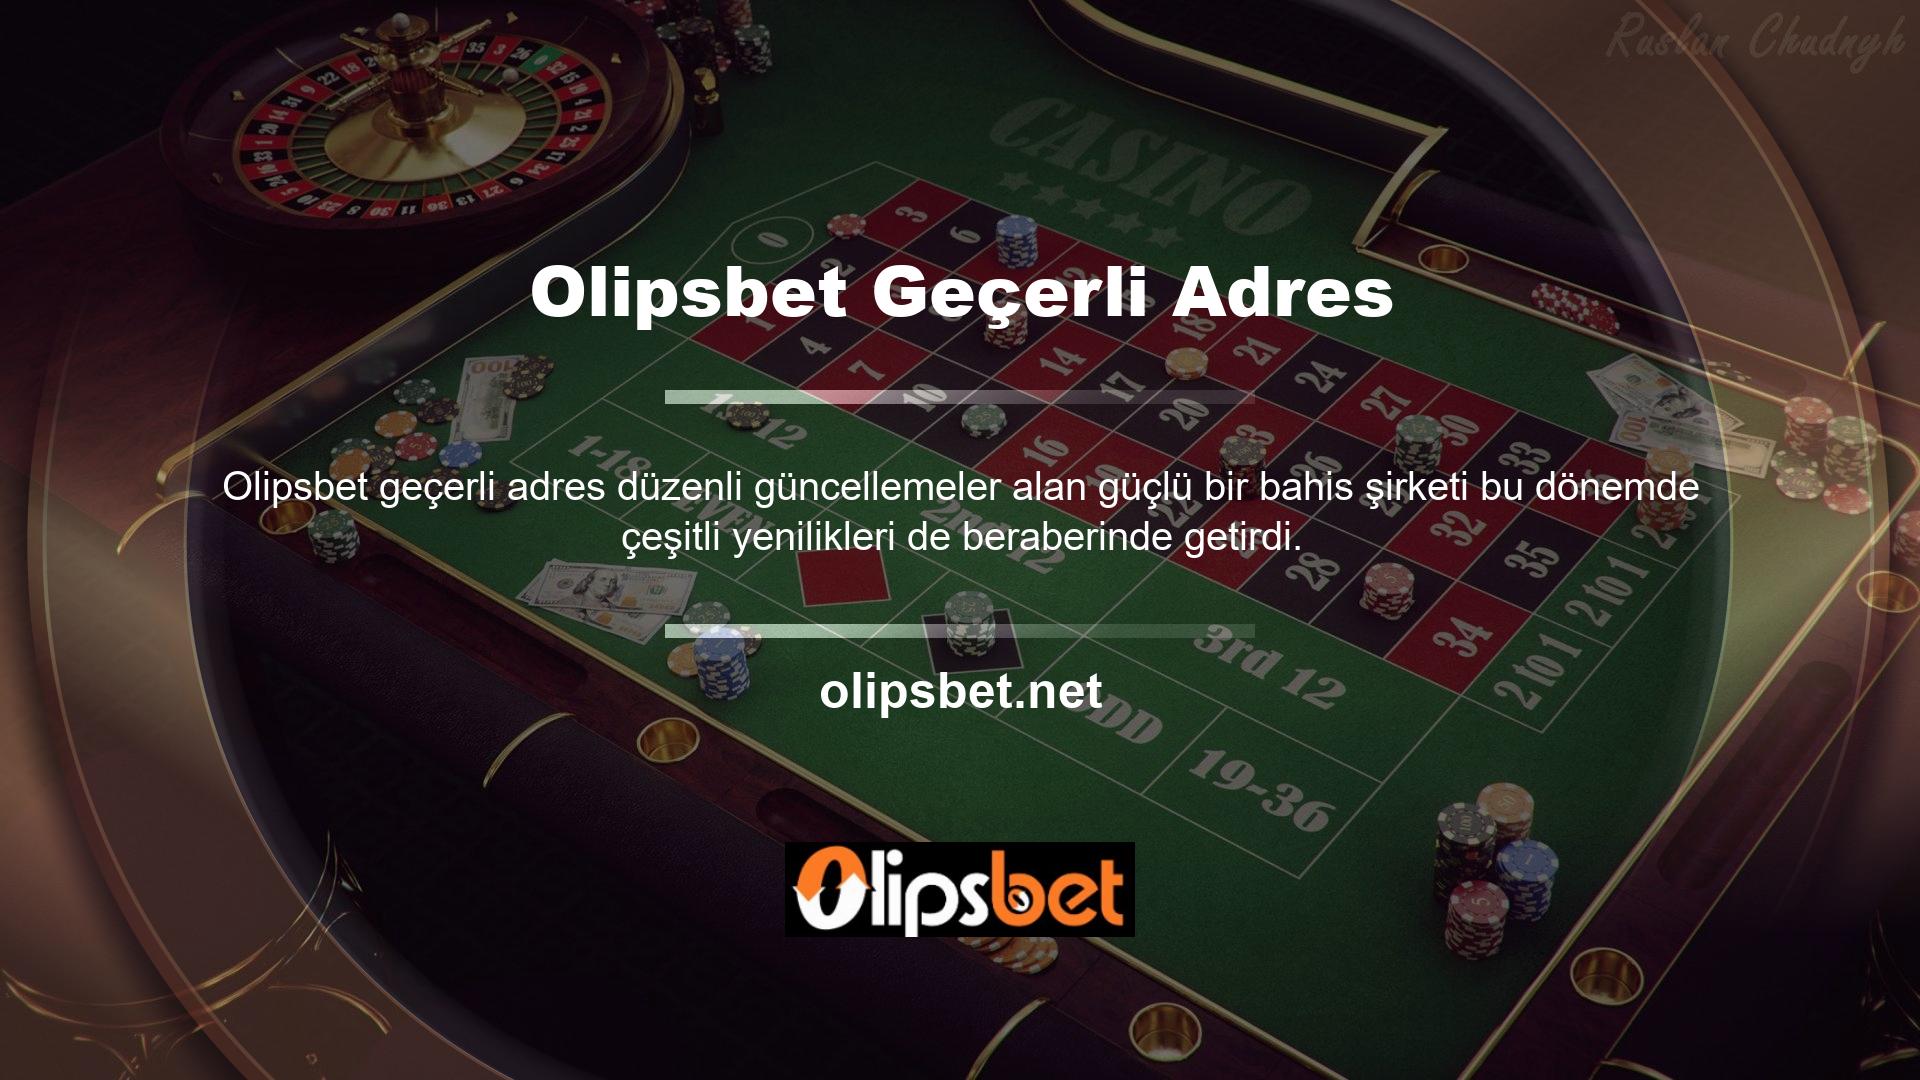 Olipsbet, bahisçilere mevcut adres alanında güvenli ve emniyetli bir oyun ortamı sağlama kurumsal felsefesini sürdürmek için elinden gelenin en iyisini yapıyor